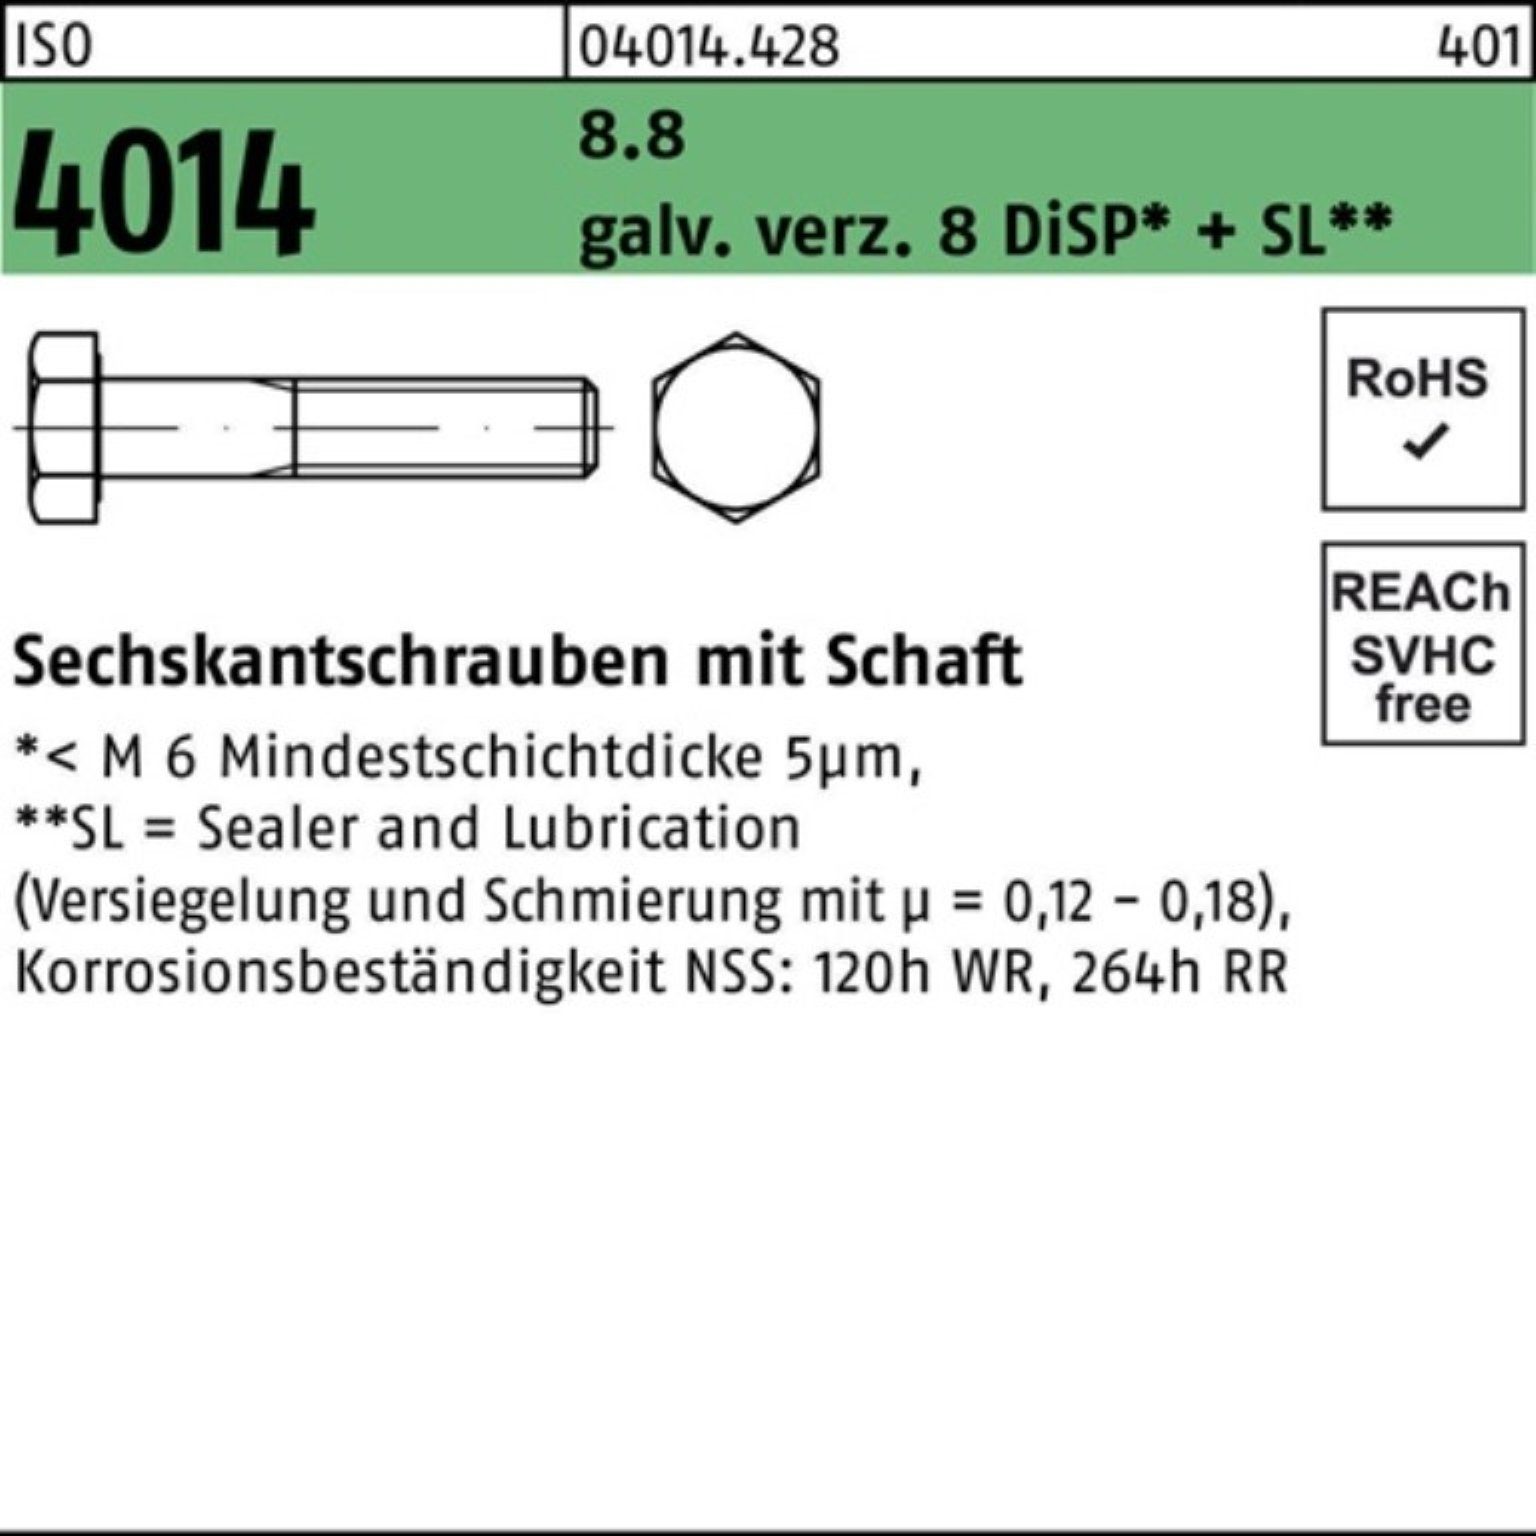 Bufab Sechskantschraube 100er Pack Sechskantschraube ISO 4014 Schaft M24x130 8.8 galv.verz. 8